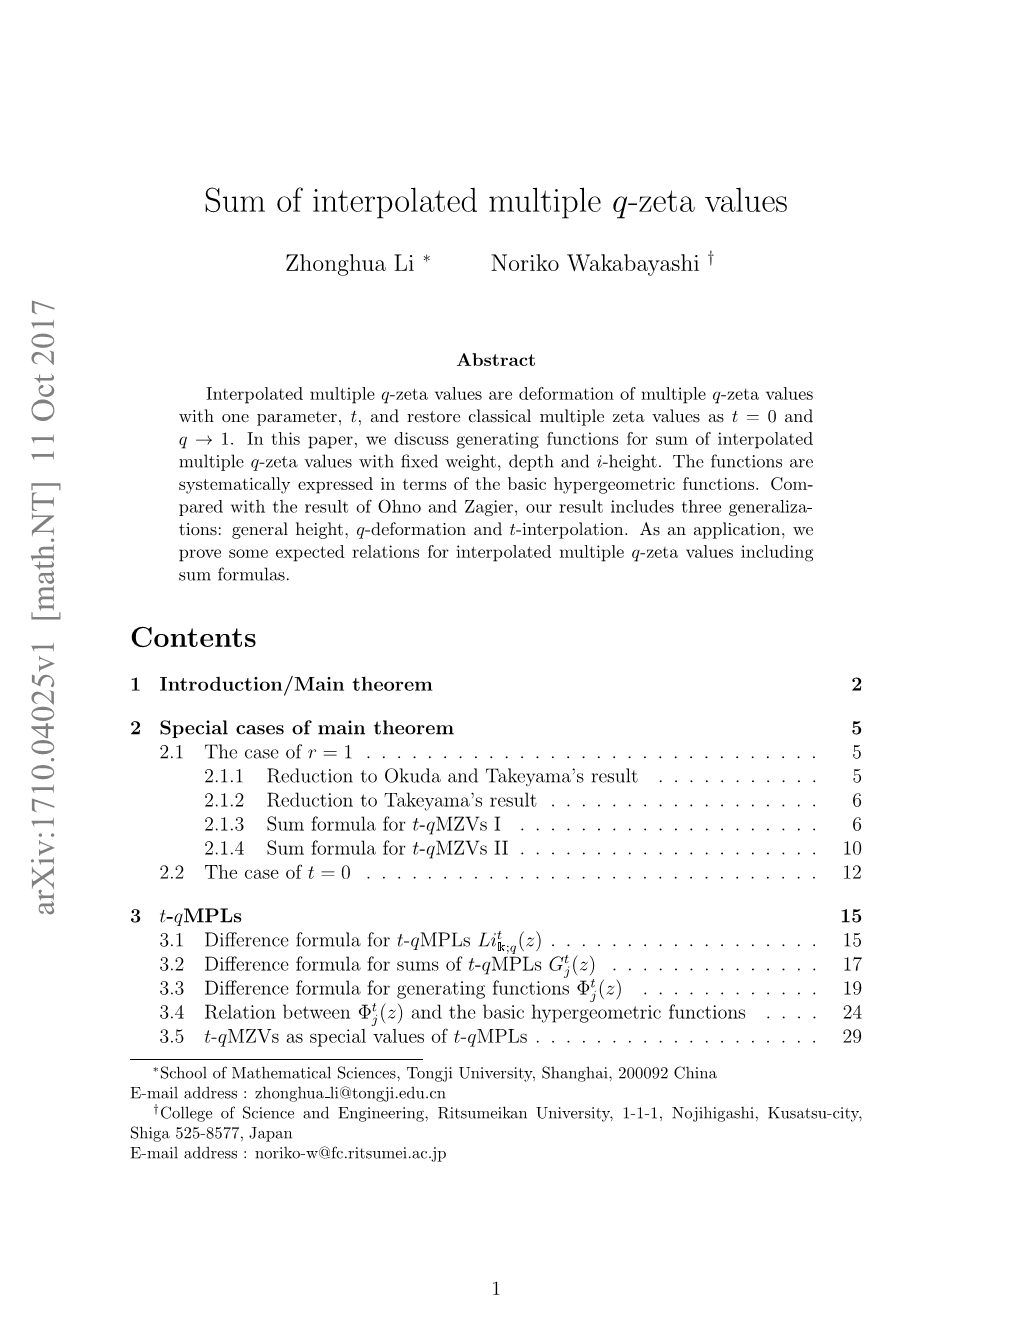 Sum of Interpolated Multiple Q-Zeta Values